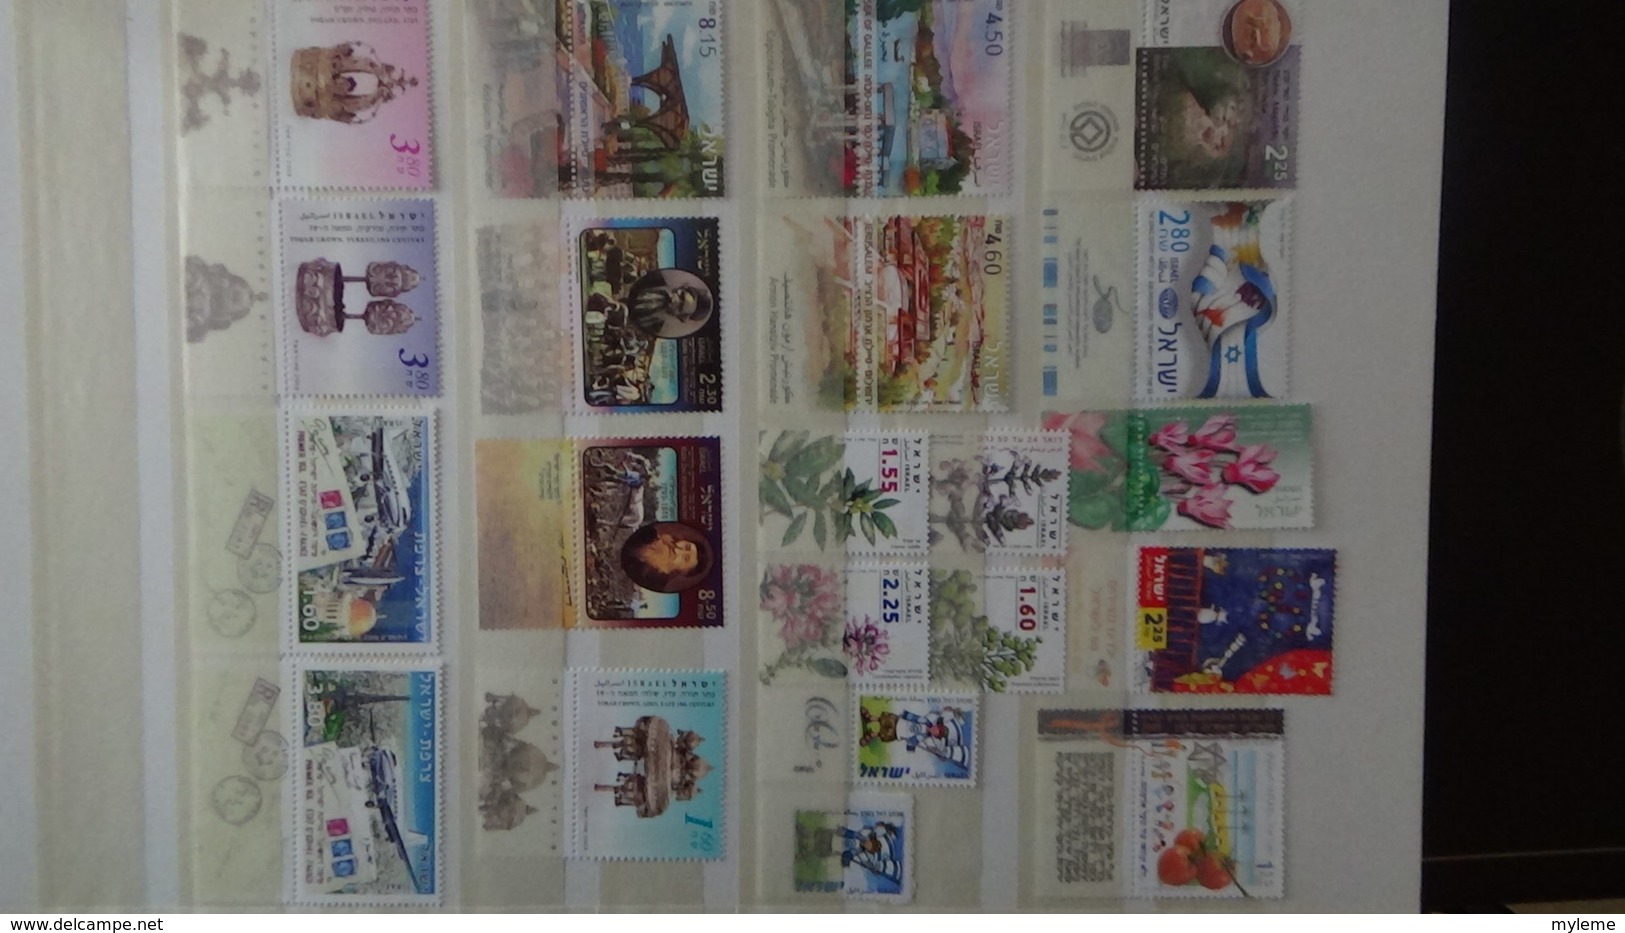 Grosse collection ISRAEL en timbres avec tabs, blocs, carnets **. Belle côte !!!